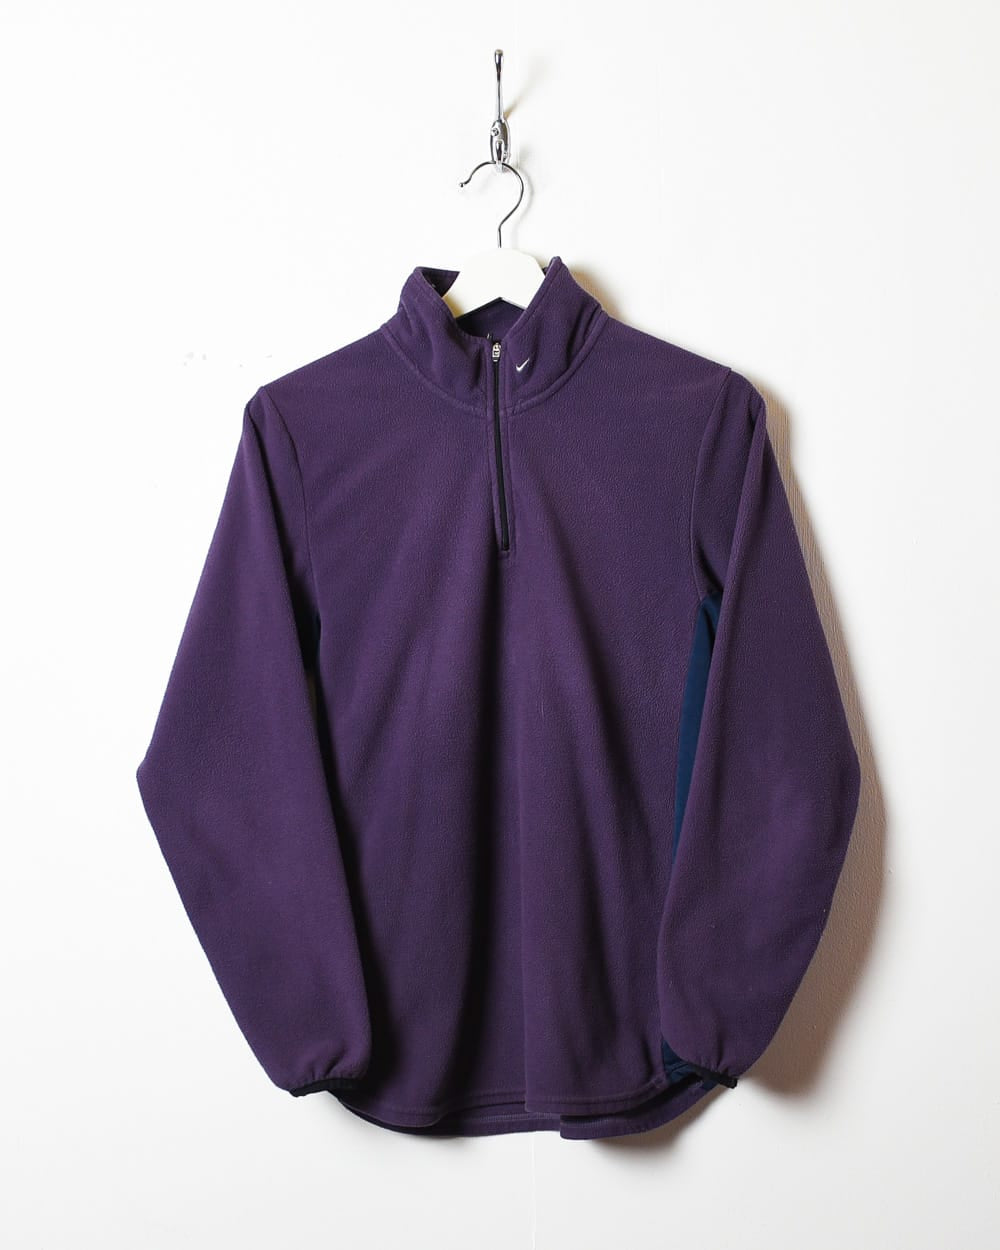 Purple Nike 1/4 Zip Fleece - Small Women's